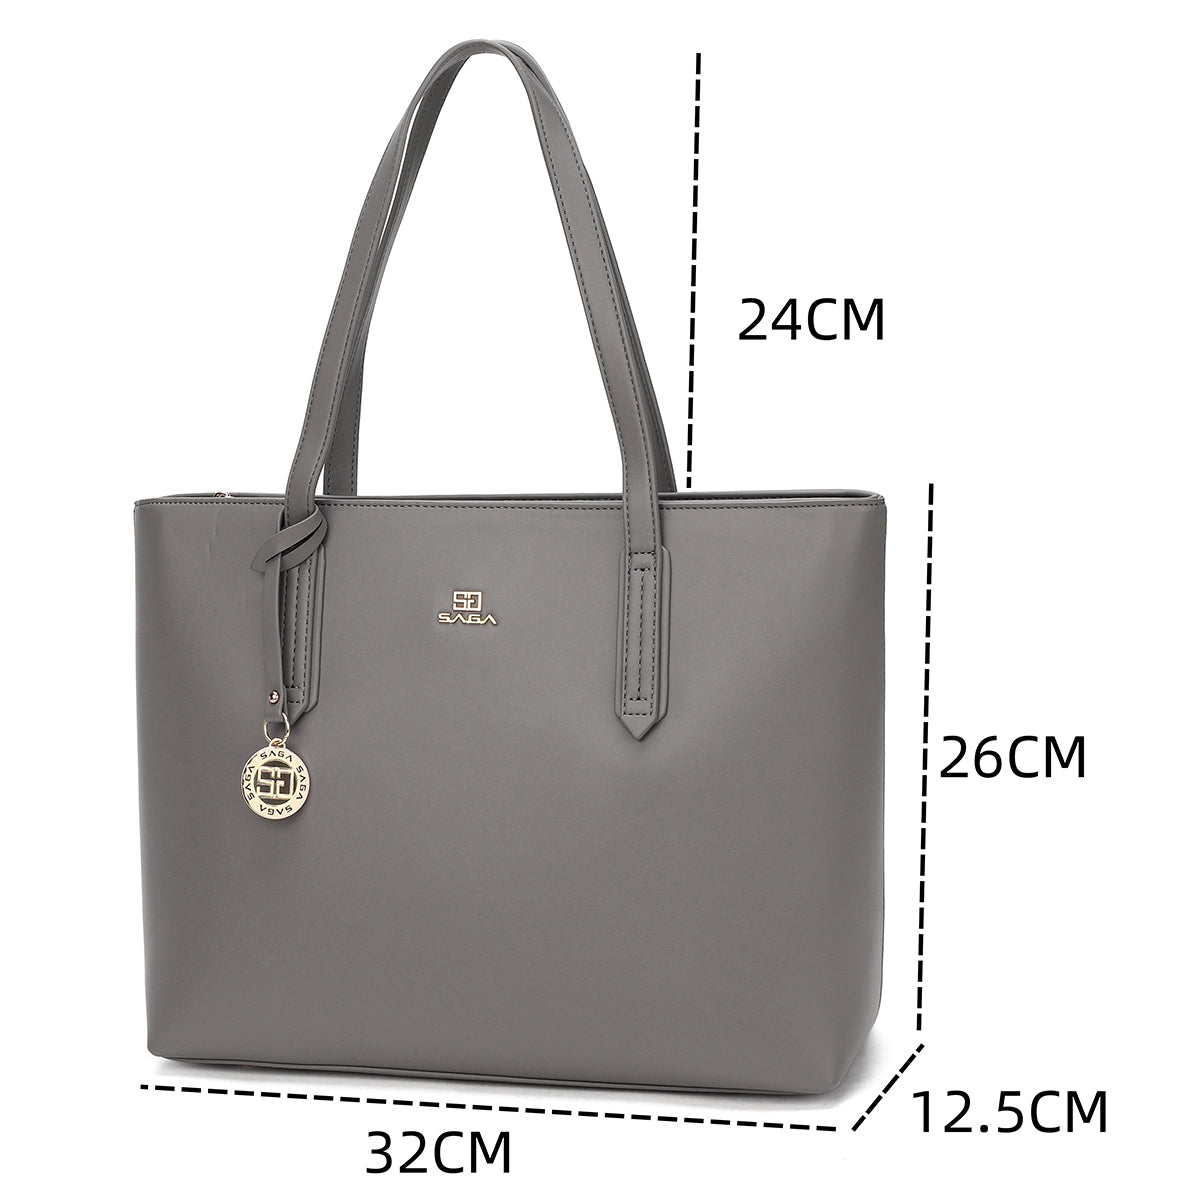 Simple and elegant design bag, 32 cm wide, three colors